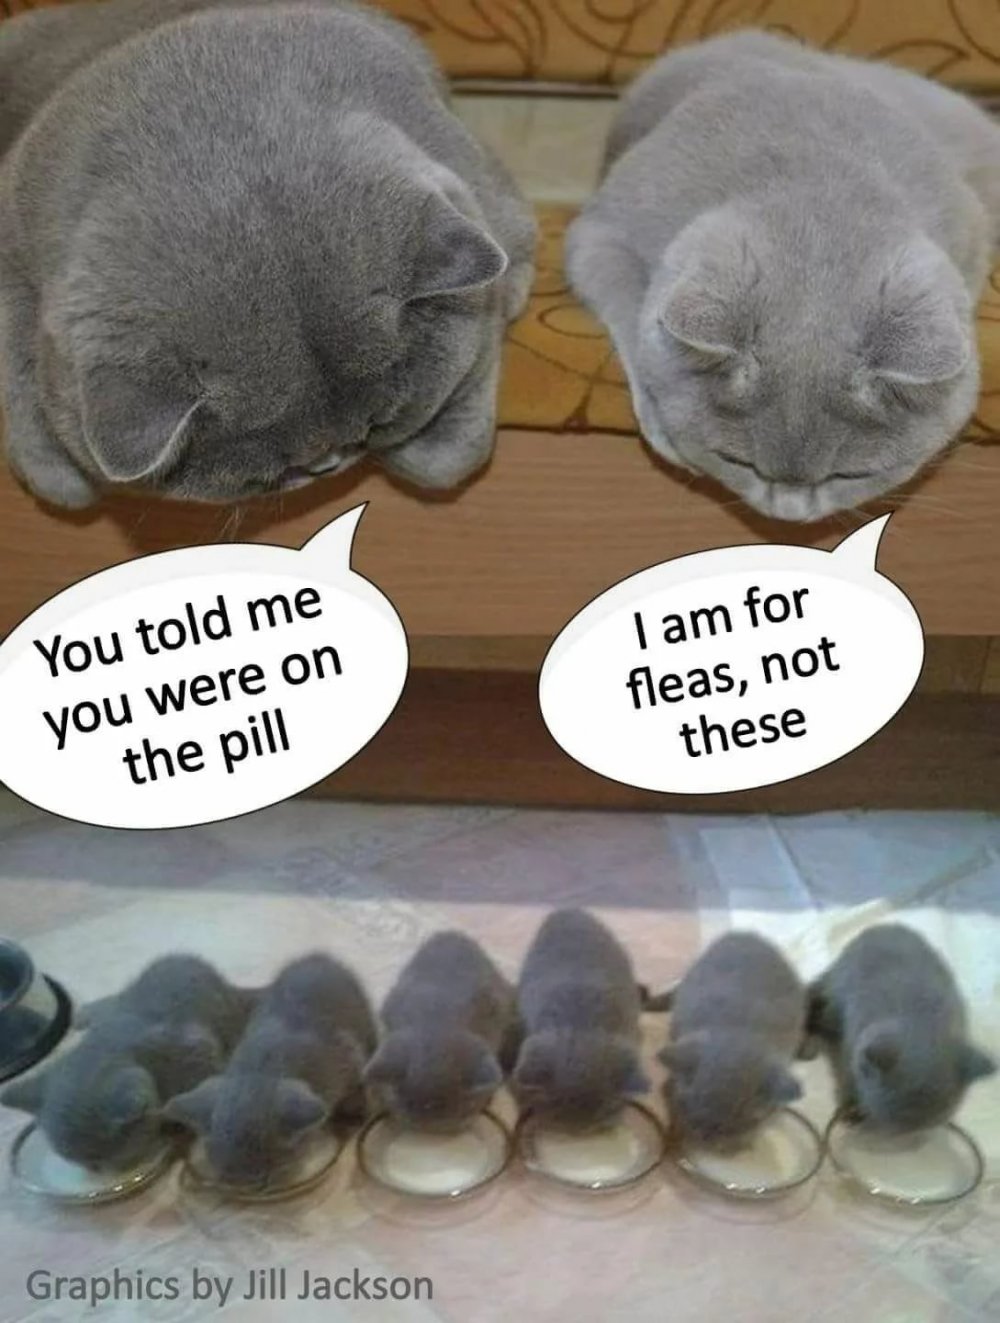 Мемы с котятами